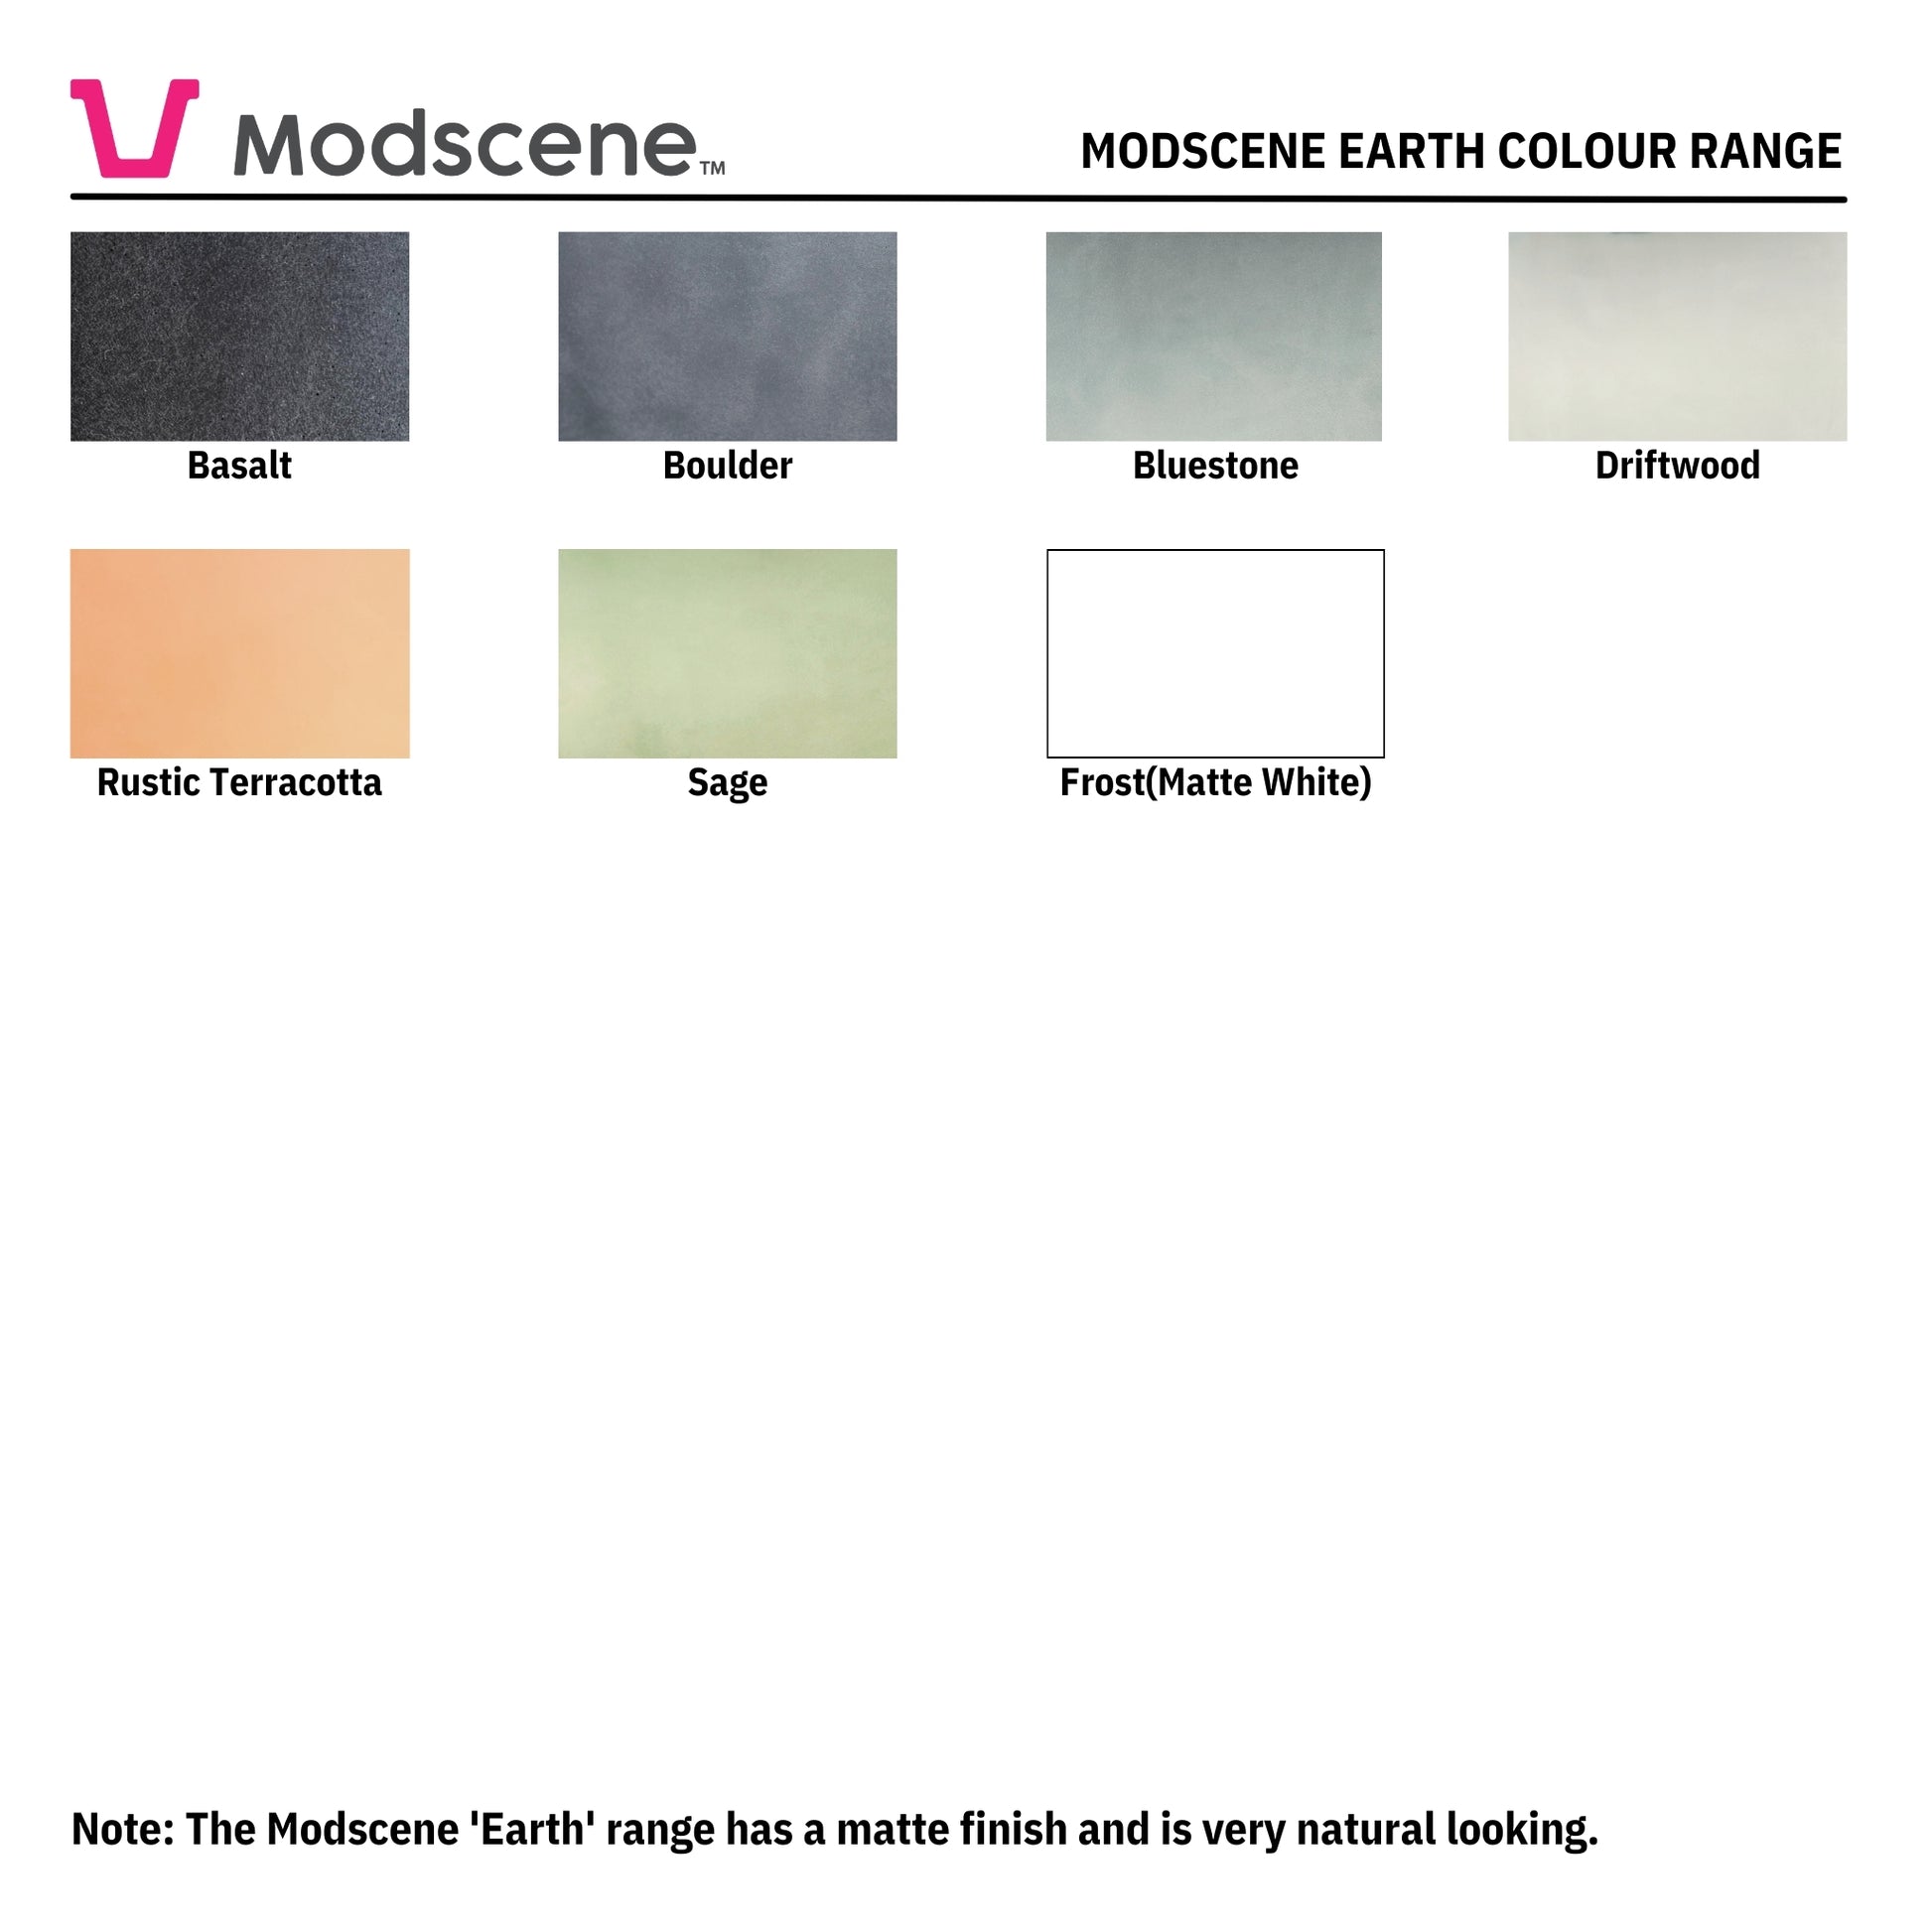 The Modscene Earth colour range.